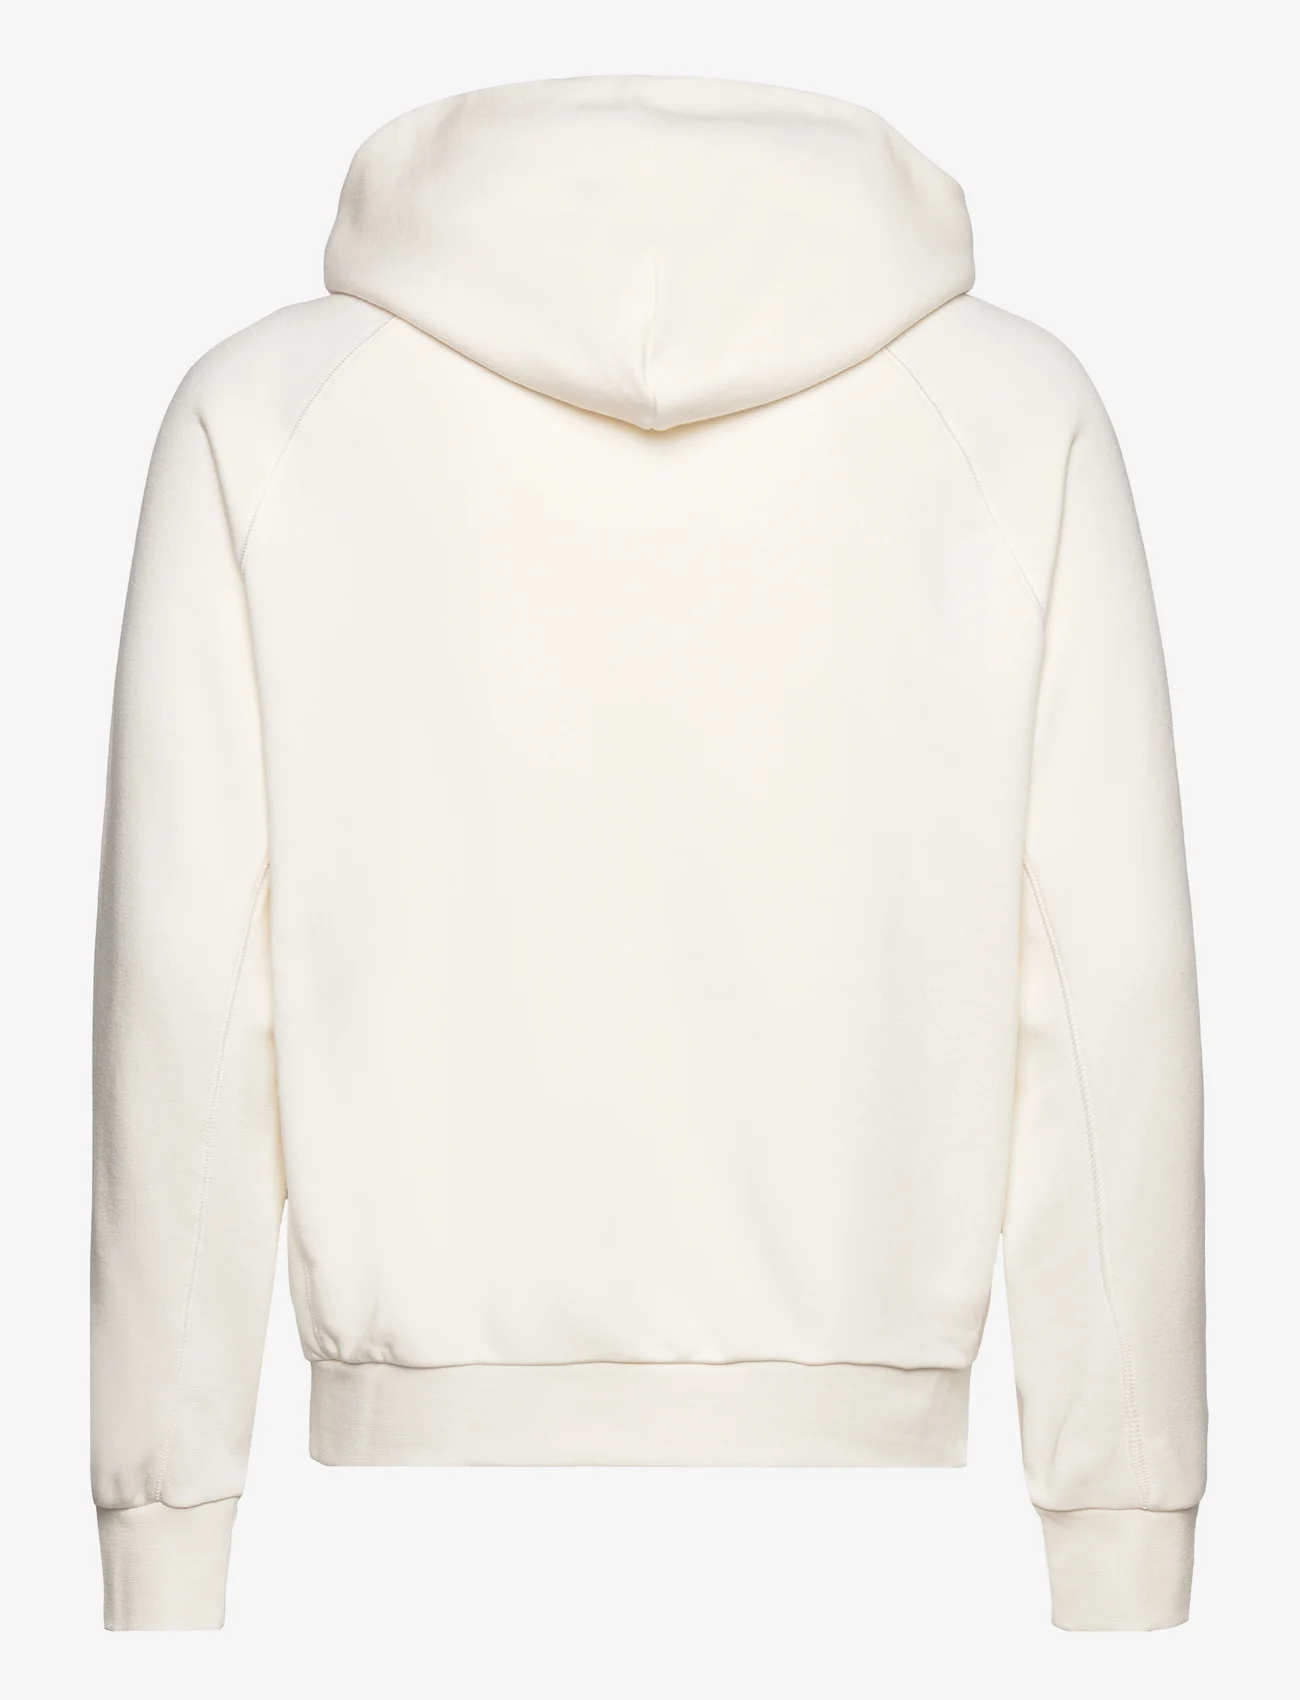 Calvin Klein - SOFT COTTON MODAL HOODIE - hoodies - egret - 1